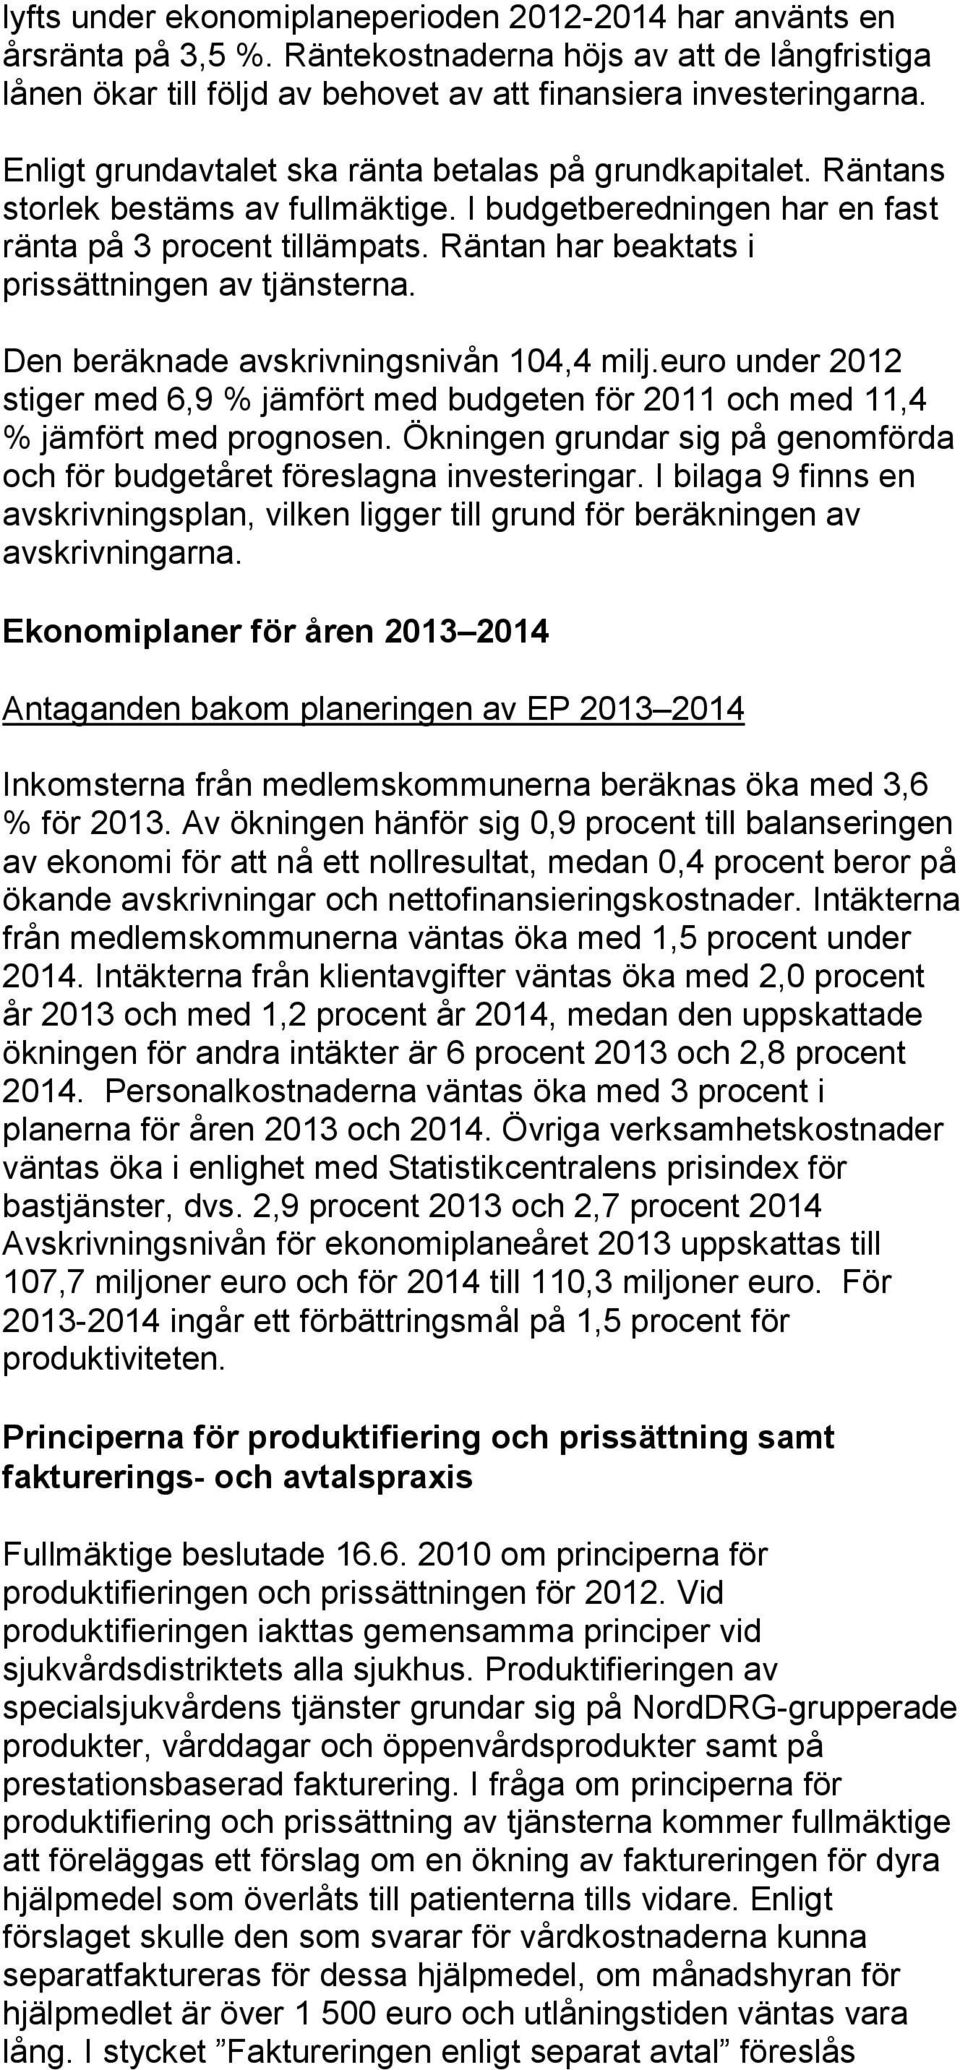 Räntan har beaktats i prissättningen av tjänsterna. Den beräknade avskrivningsnivån 104,4 milj.euro under 2012 stiger med 6,9 % jämfört med budgeten för 2011 och med 11,4 % jämfört med prognosen.